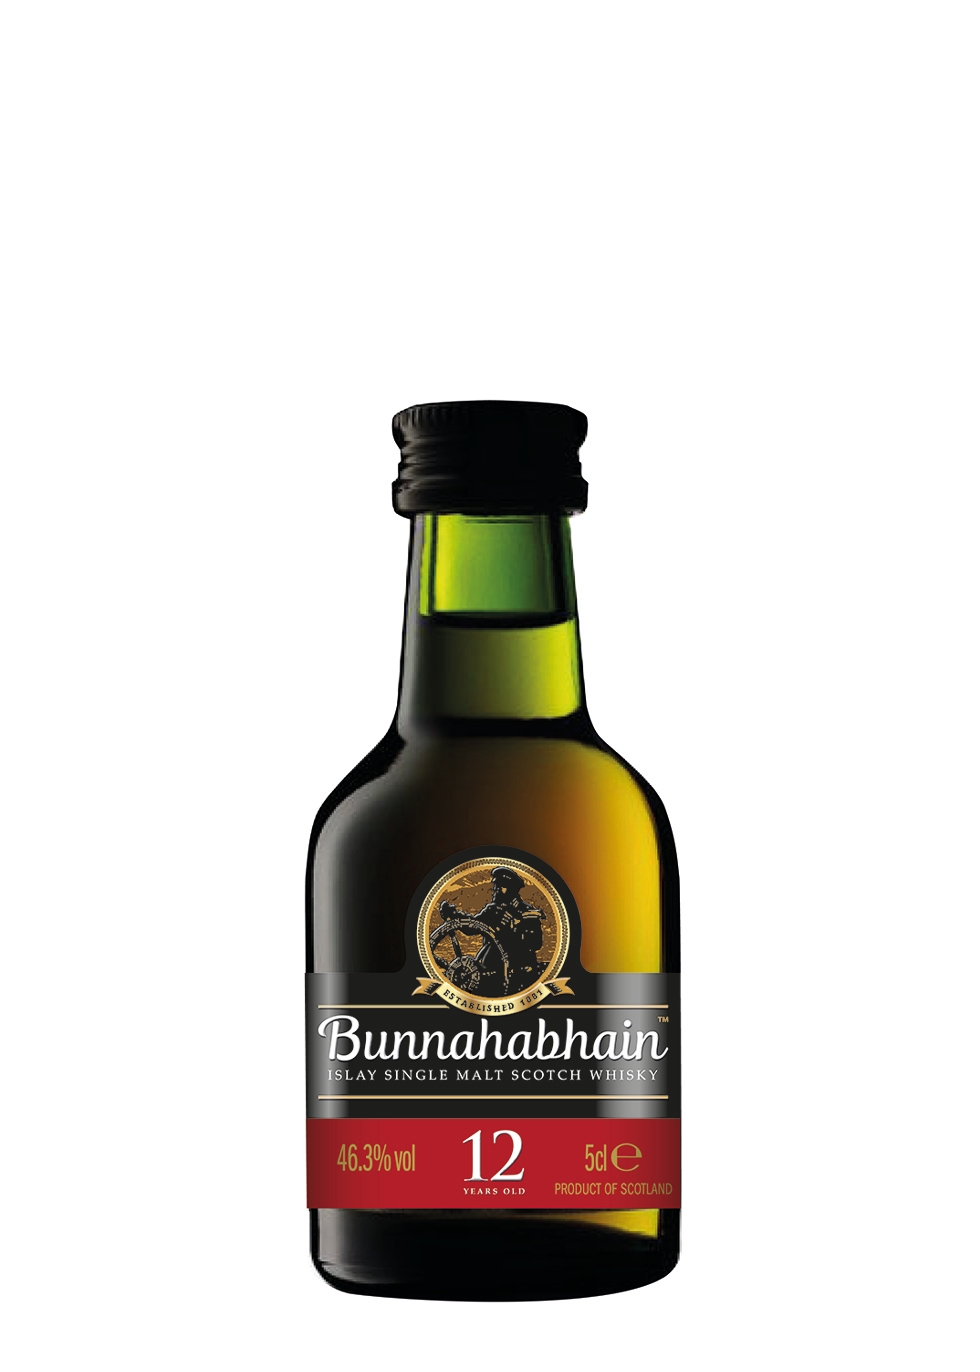 Bunnahabhain 12 Year Old Miniature - 5cl 46.3%